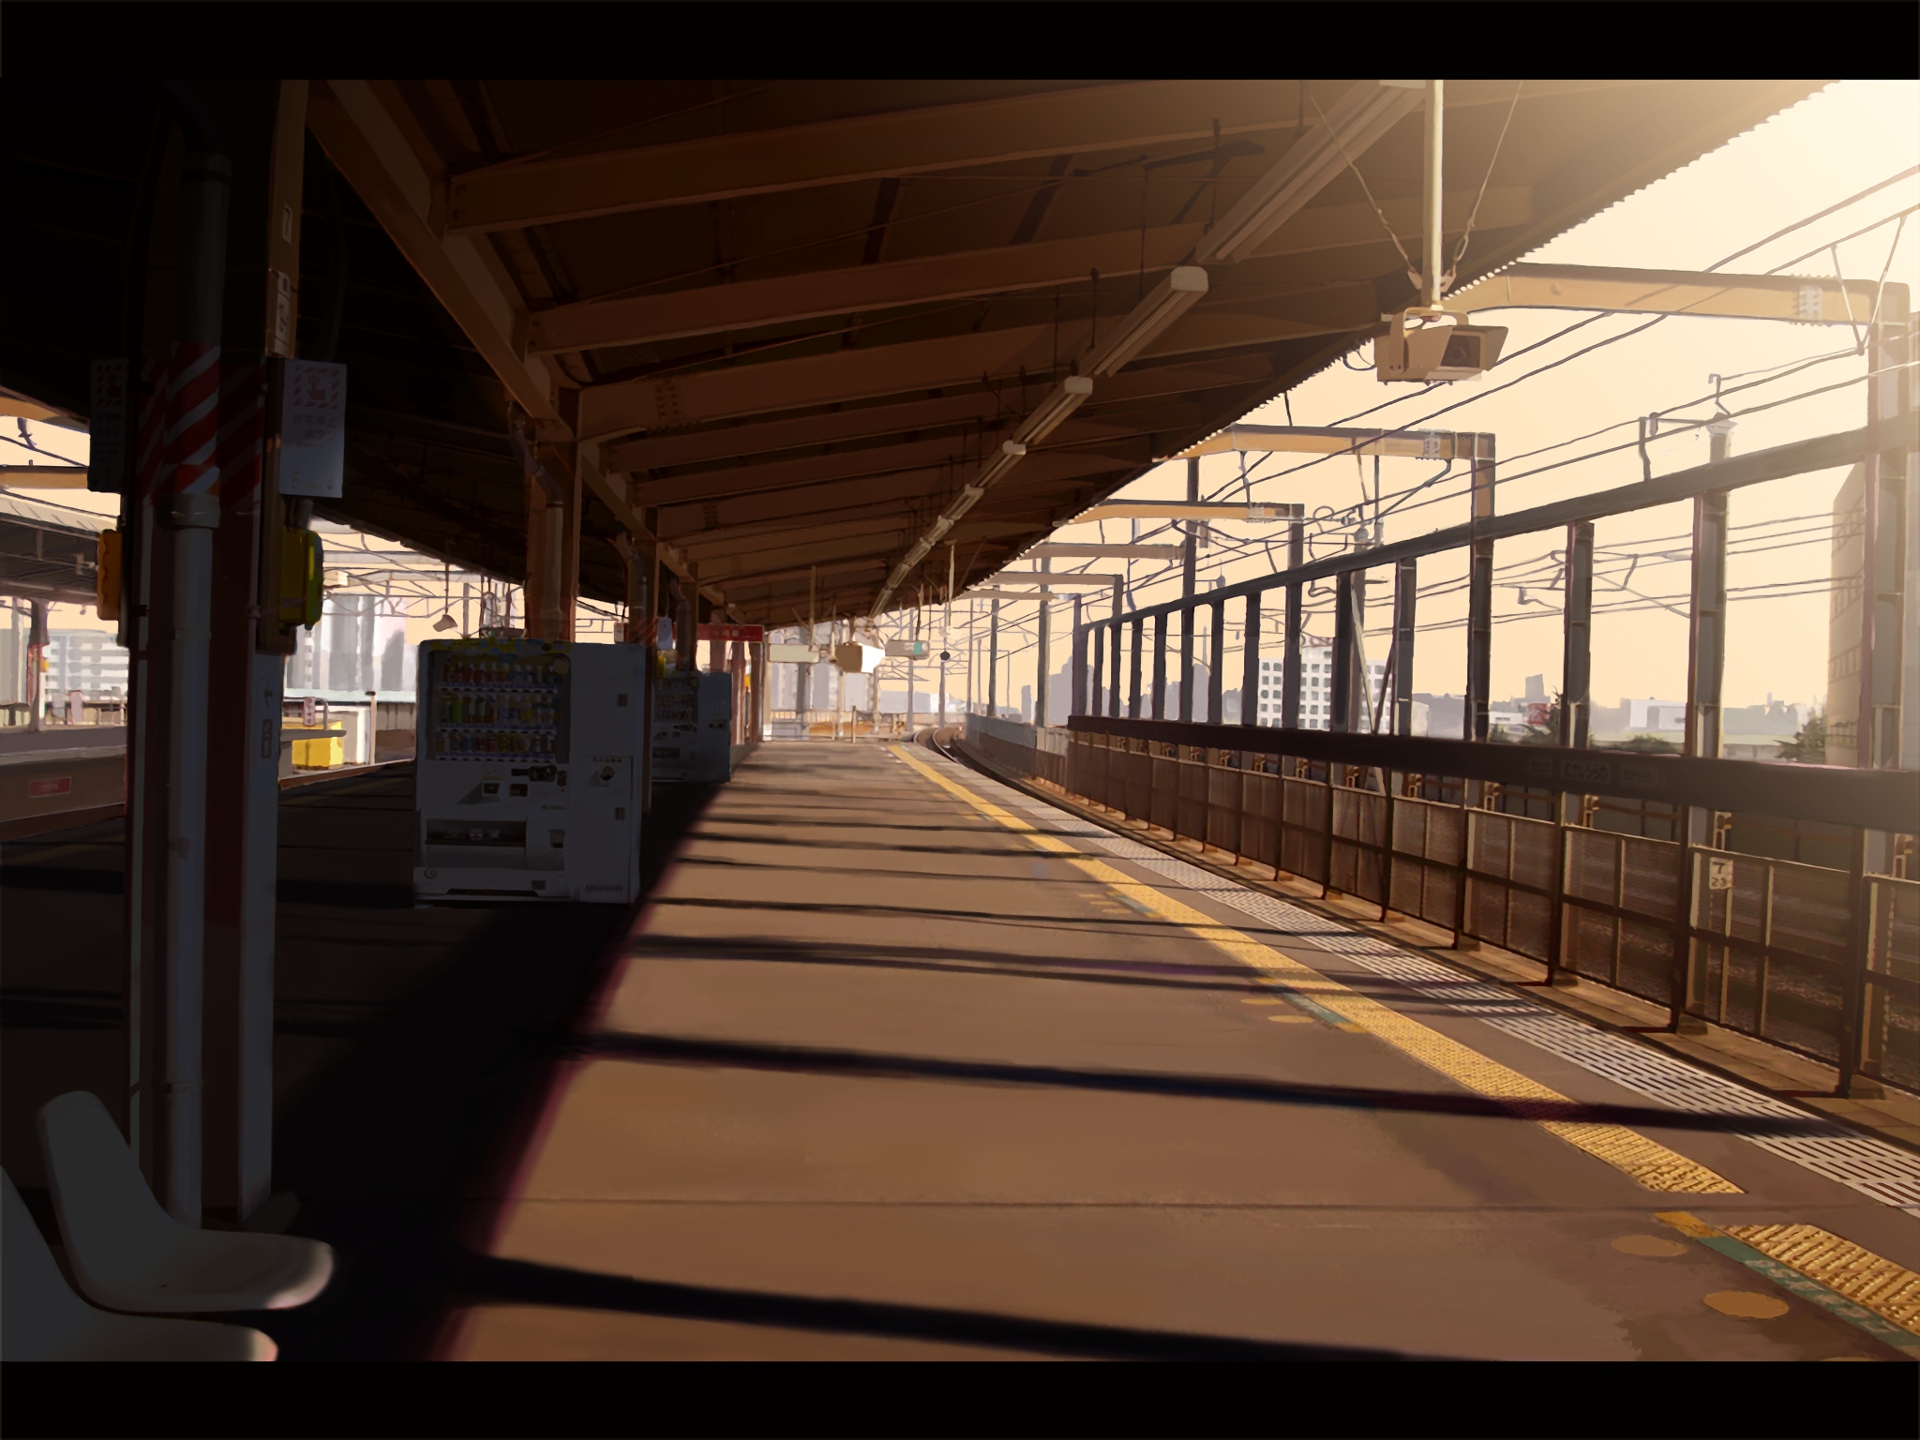 Скачать обои бесплатно Аниме, Железнодорожная Станция, Оригинал картинка на рабочий стол ПК